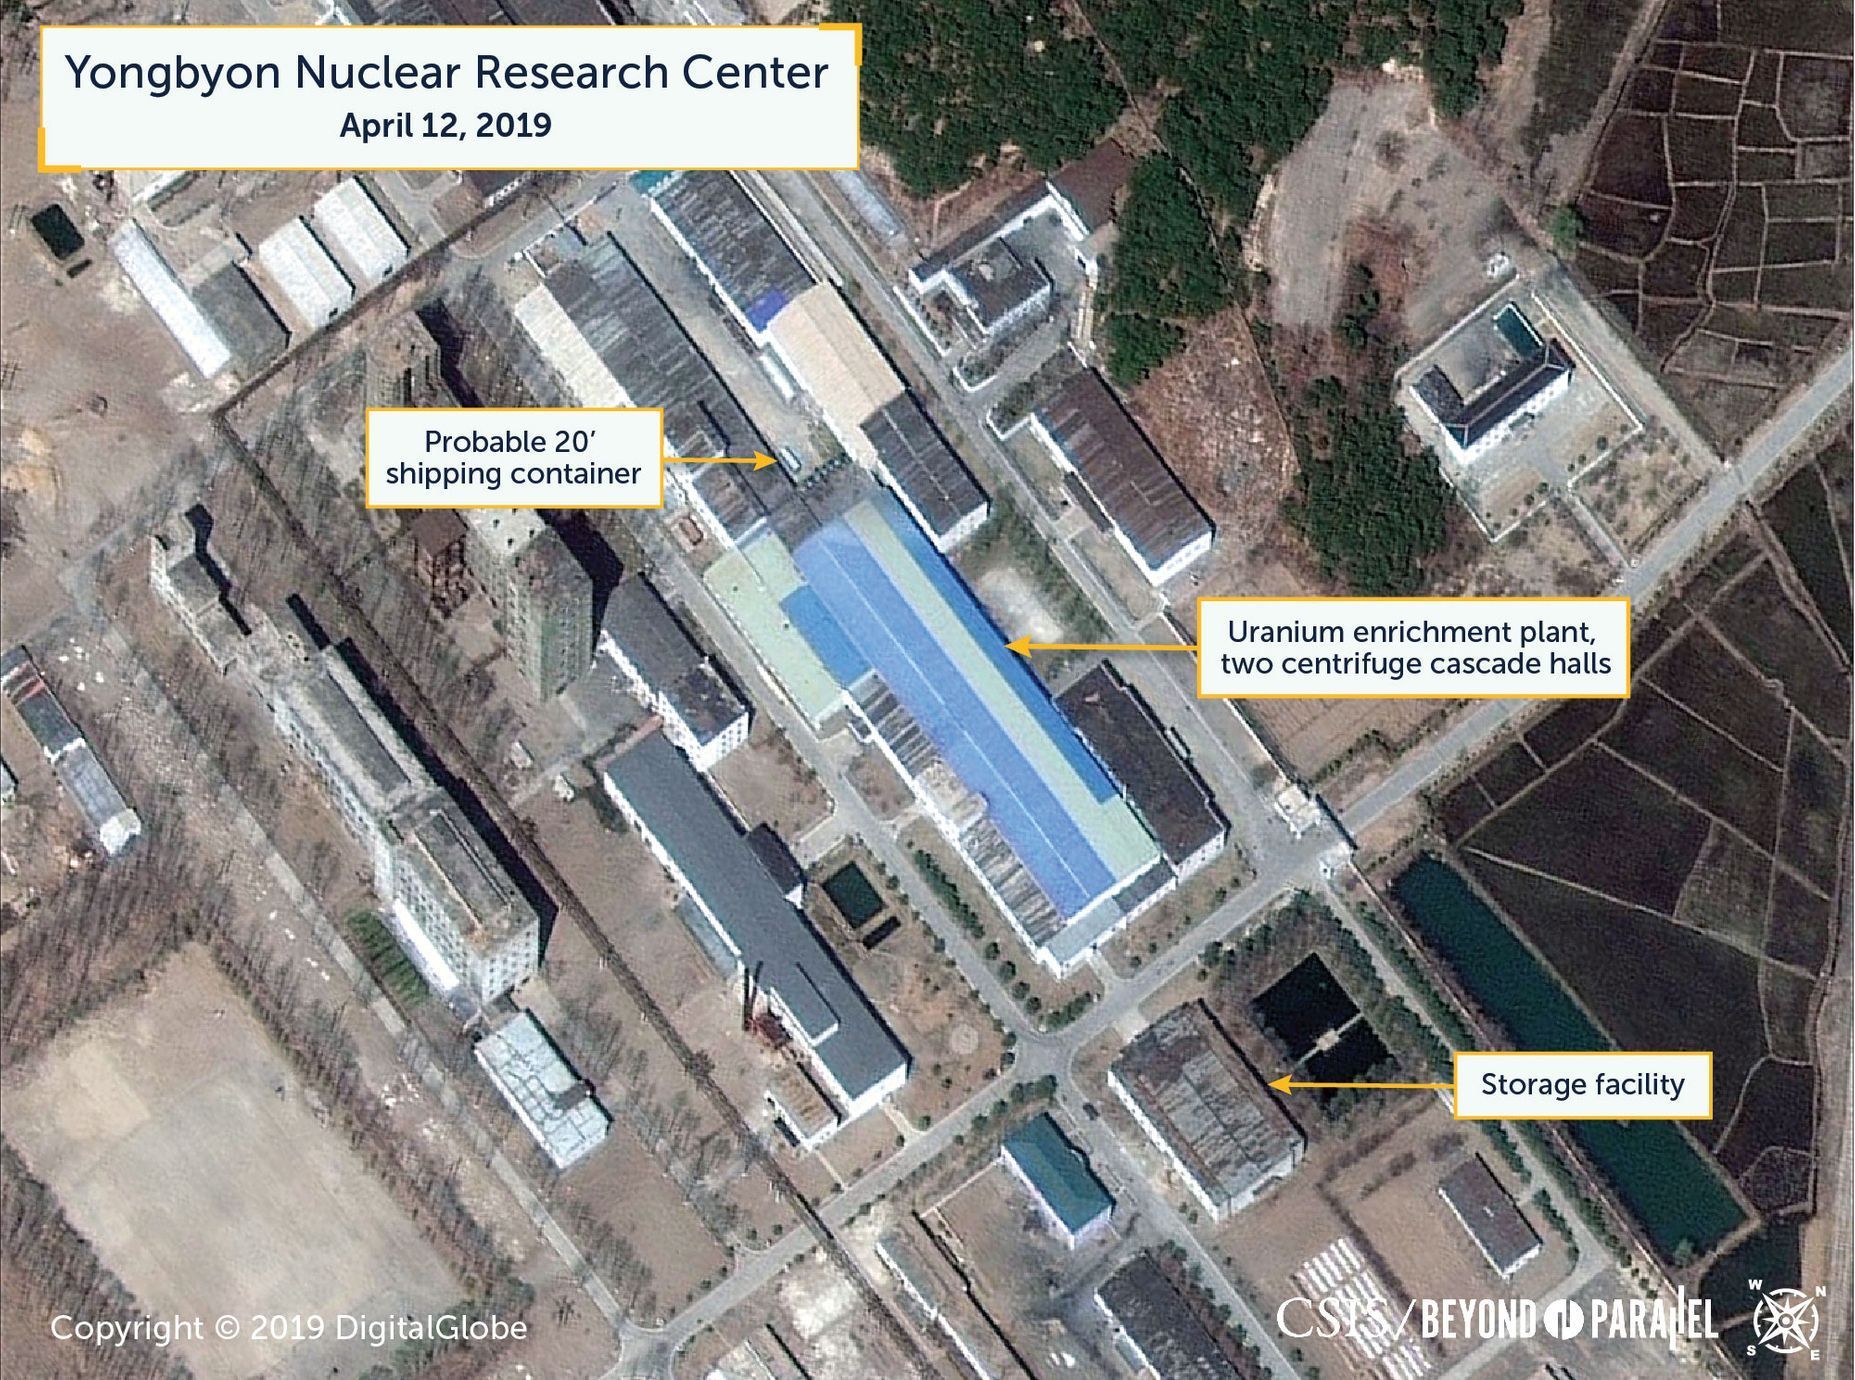 Snímek zachycující údajný kontejner nedaleko zařízení na obohacování uranu v Jongbjonu v KLDR.